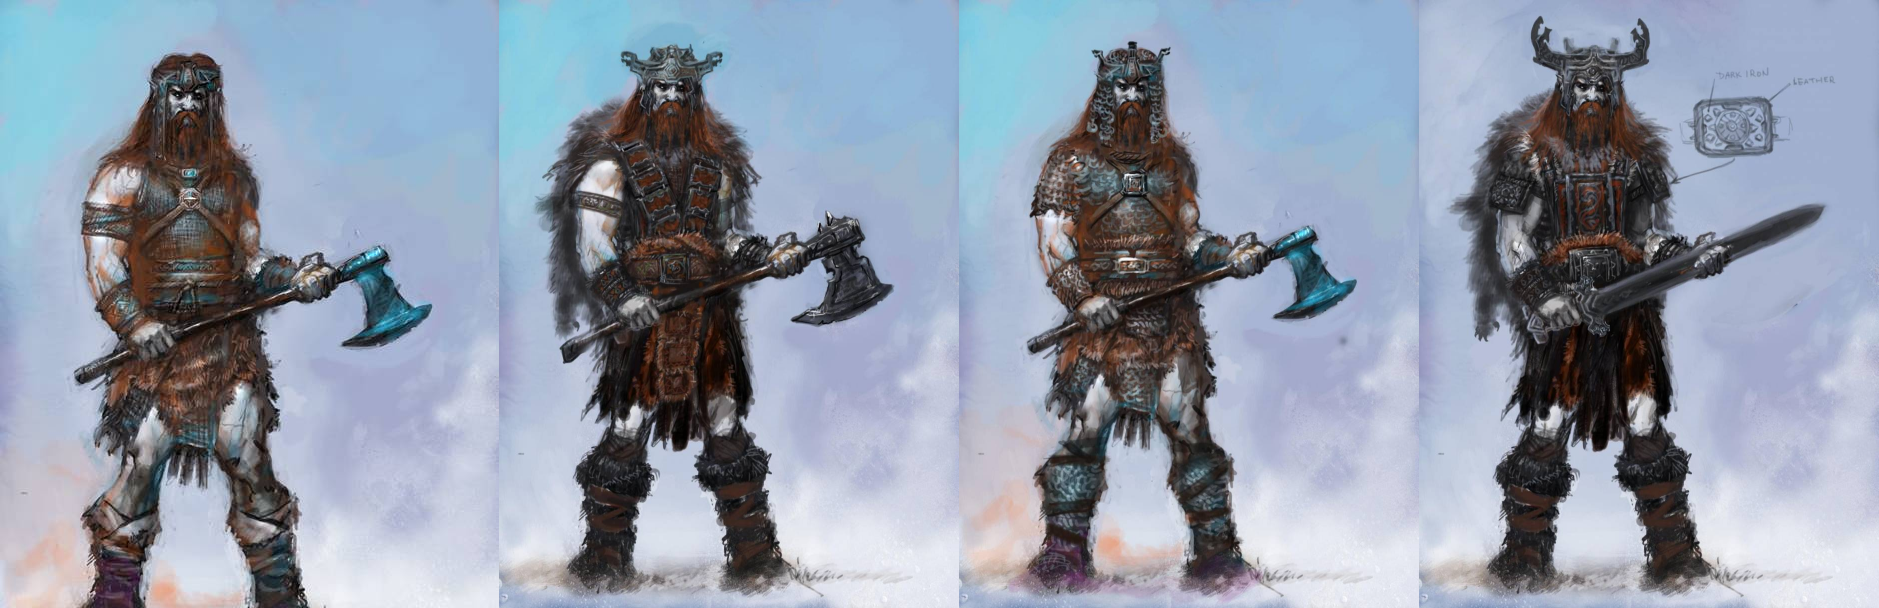 conan exiles armor cimmerian